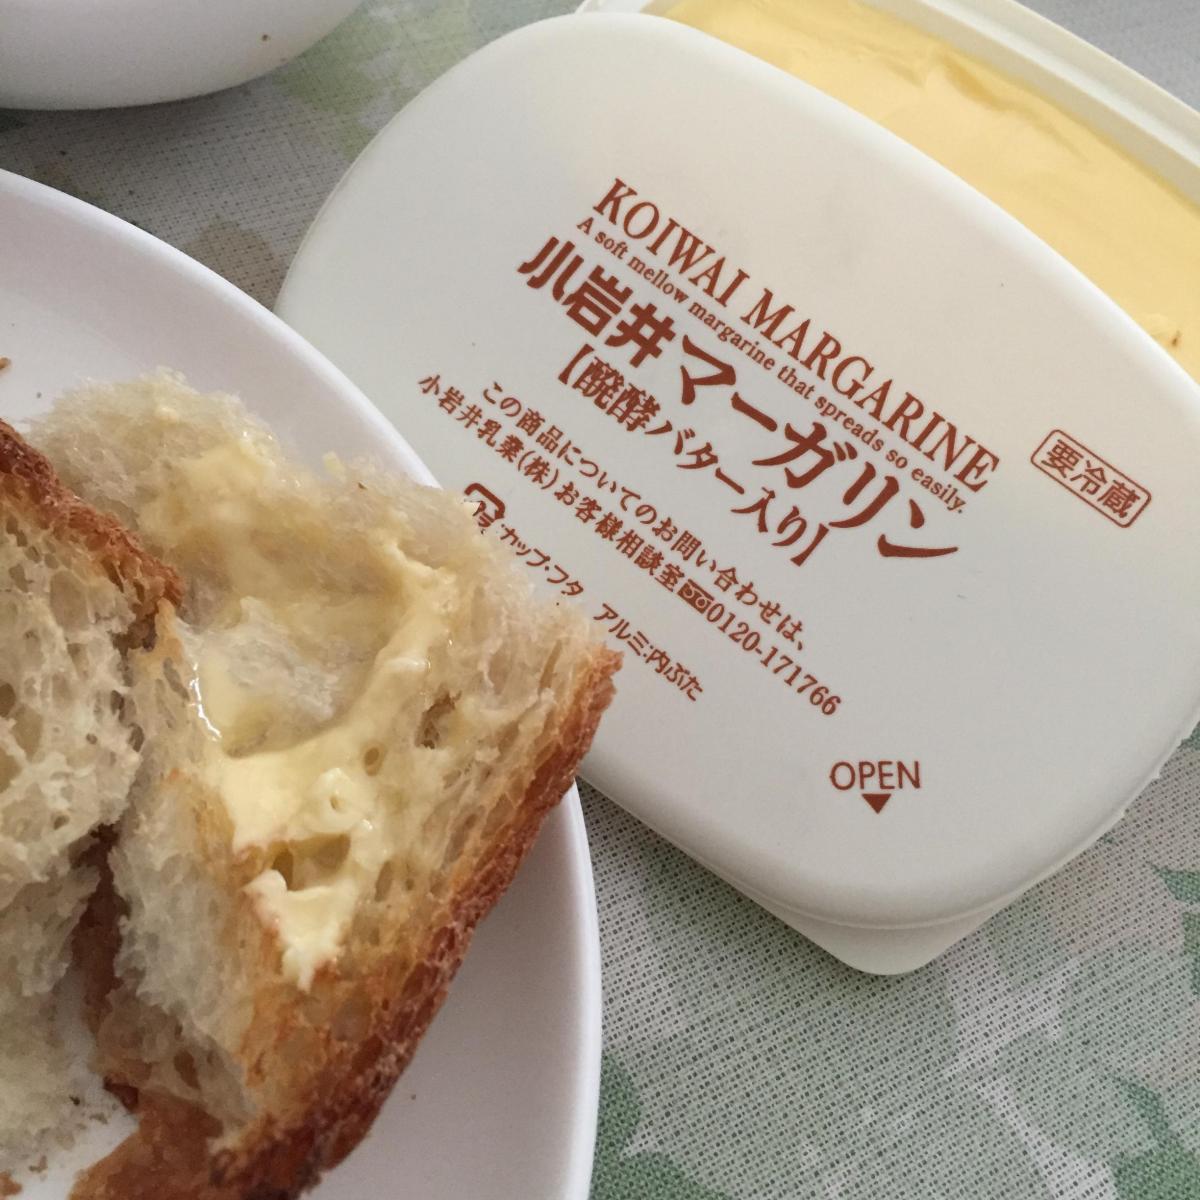 小岩井 マーガリン 醗酵バター入り の商品ページ